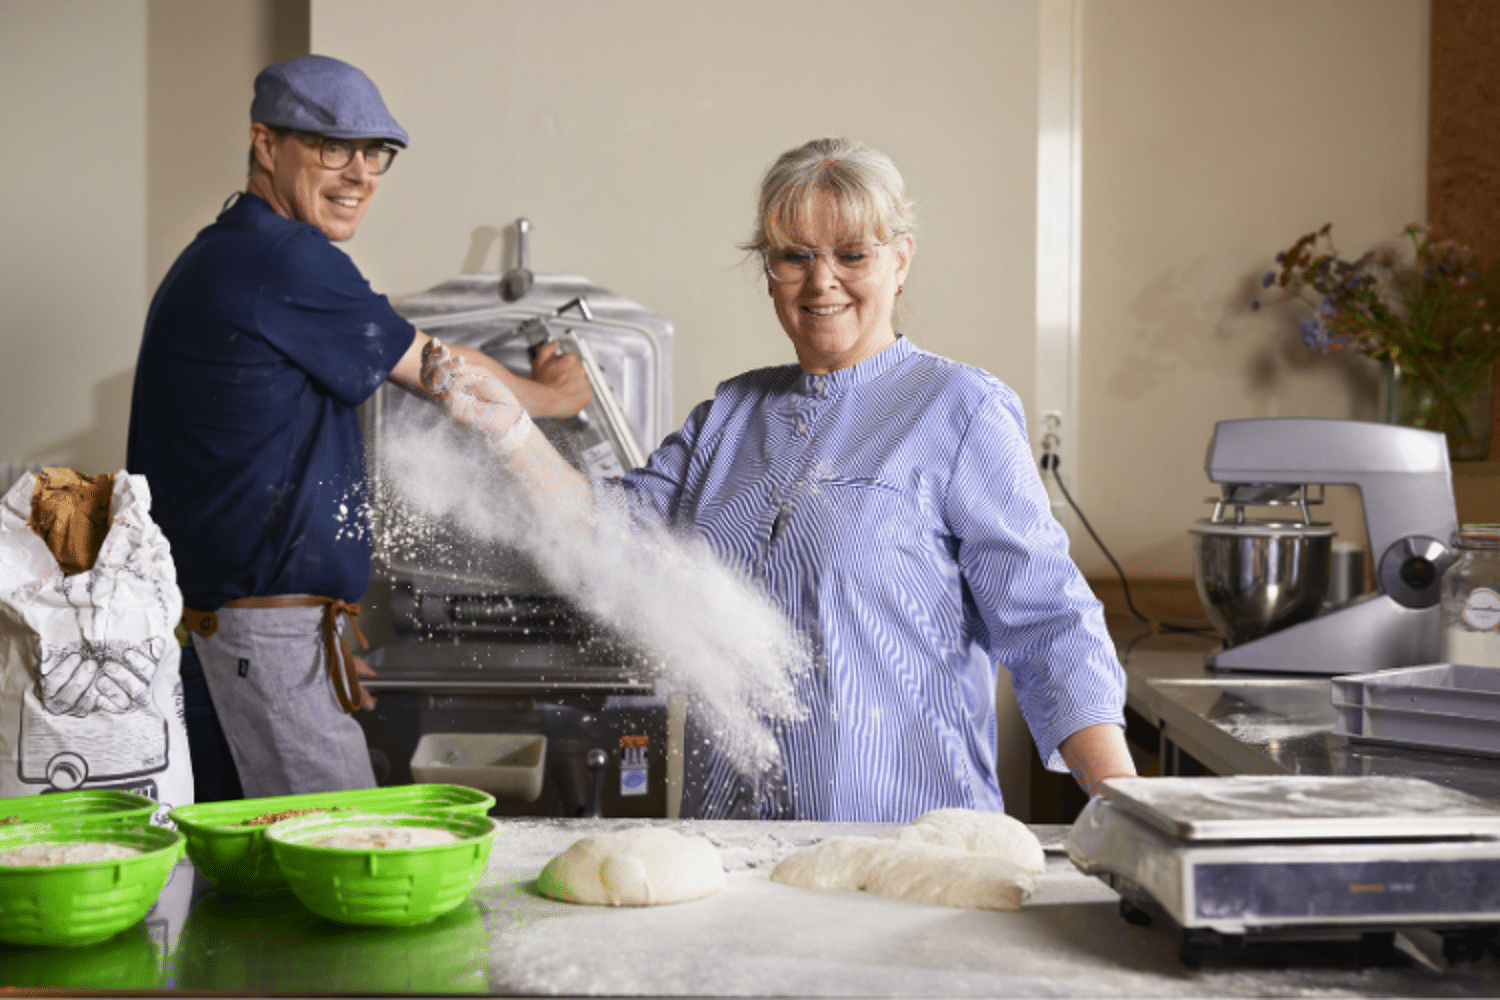 een vrouw kan bakker worden door zakelijk krediet van Qredits